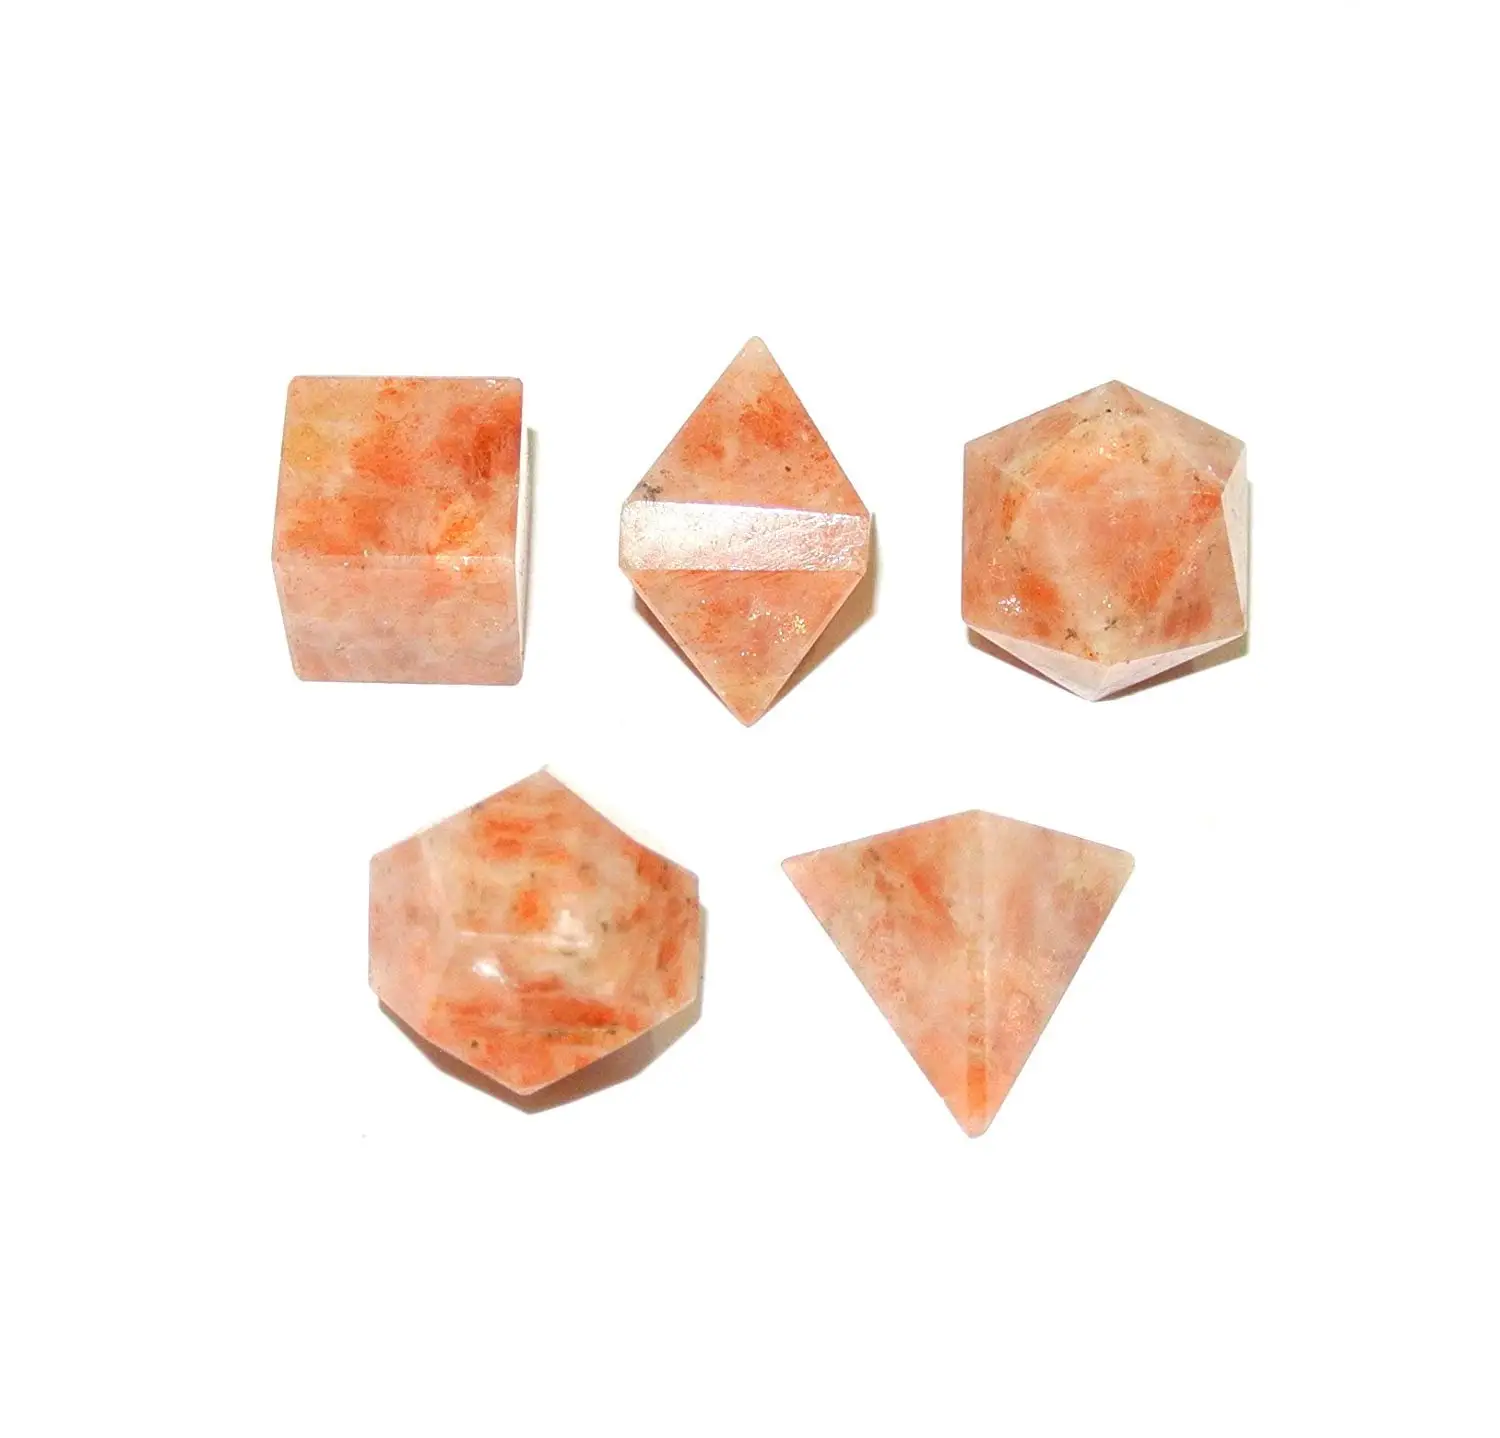 La Mayoría de venta Charka equilibrio 5 piezas piedra lunar cristal Geometría Sagrada conjunto para la venta a precios bajos de la India